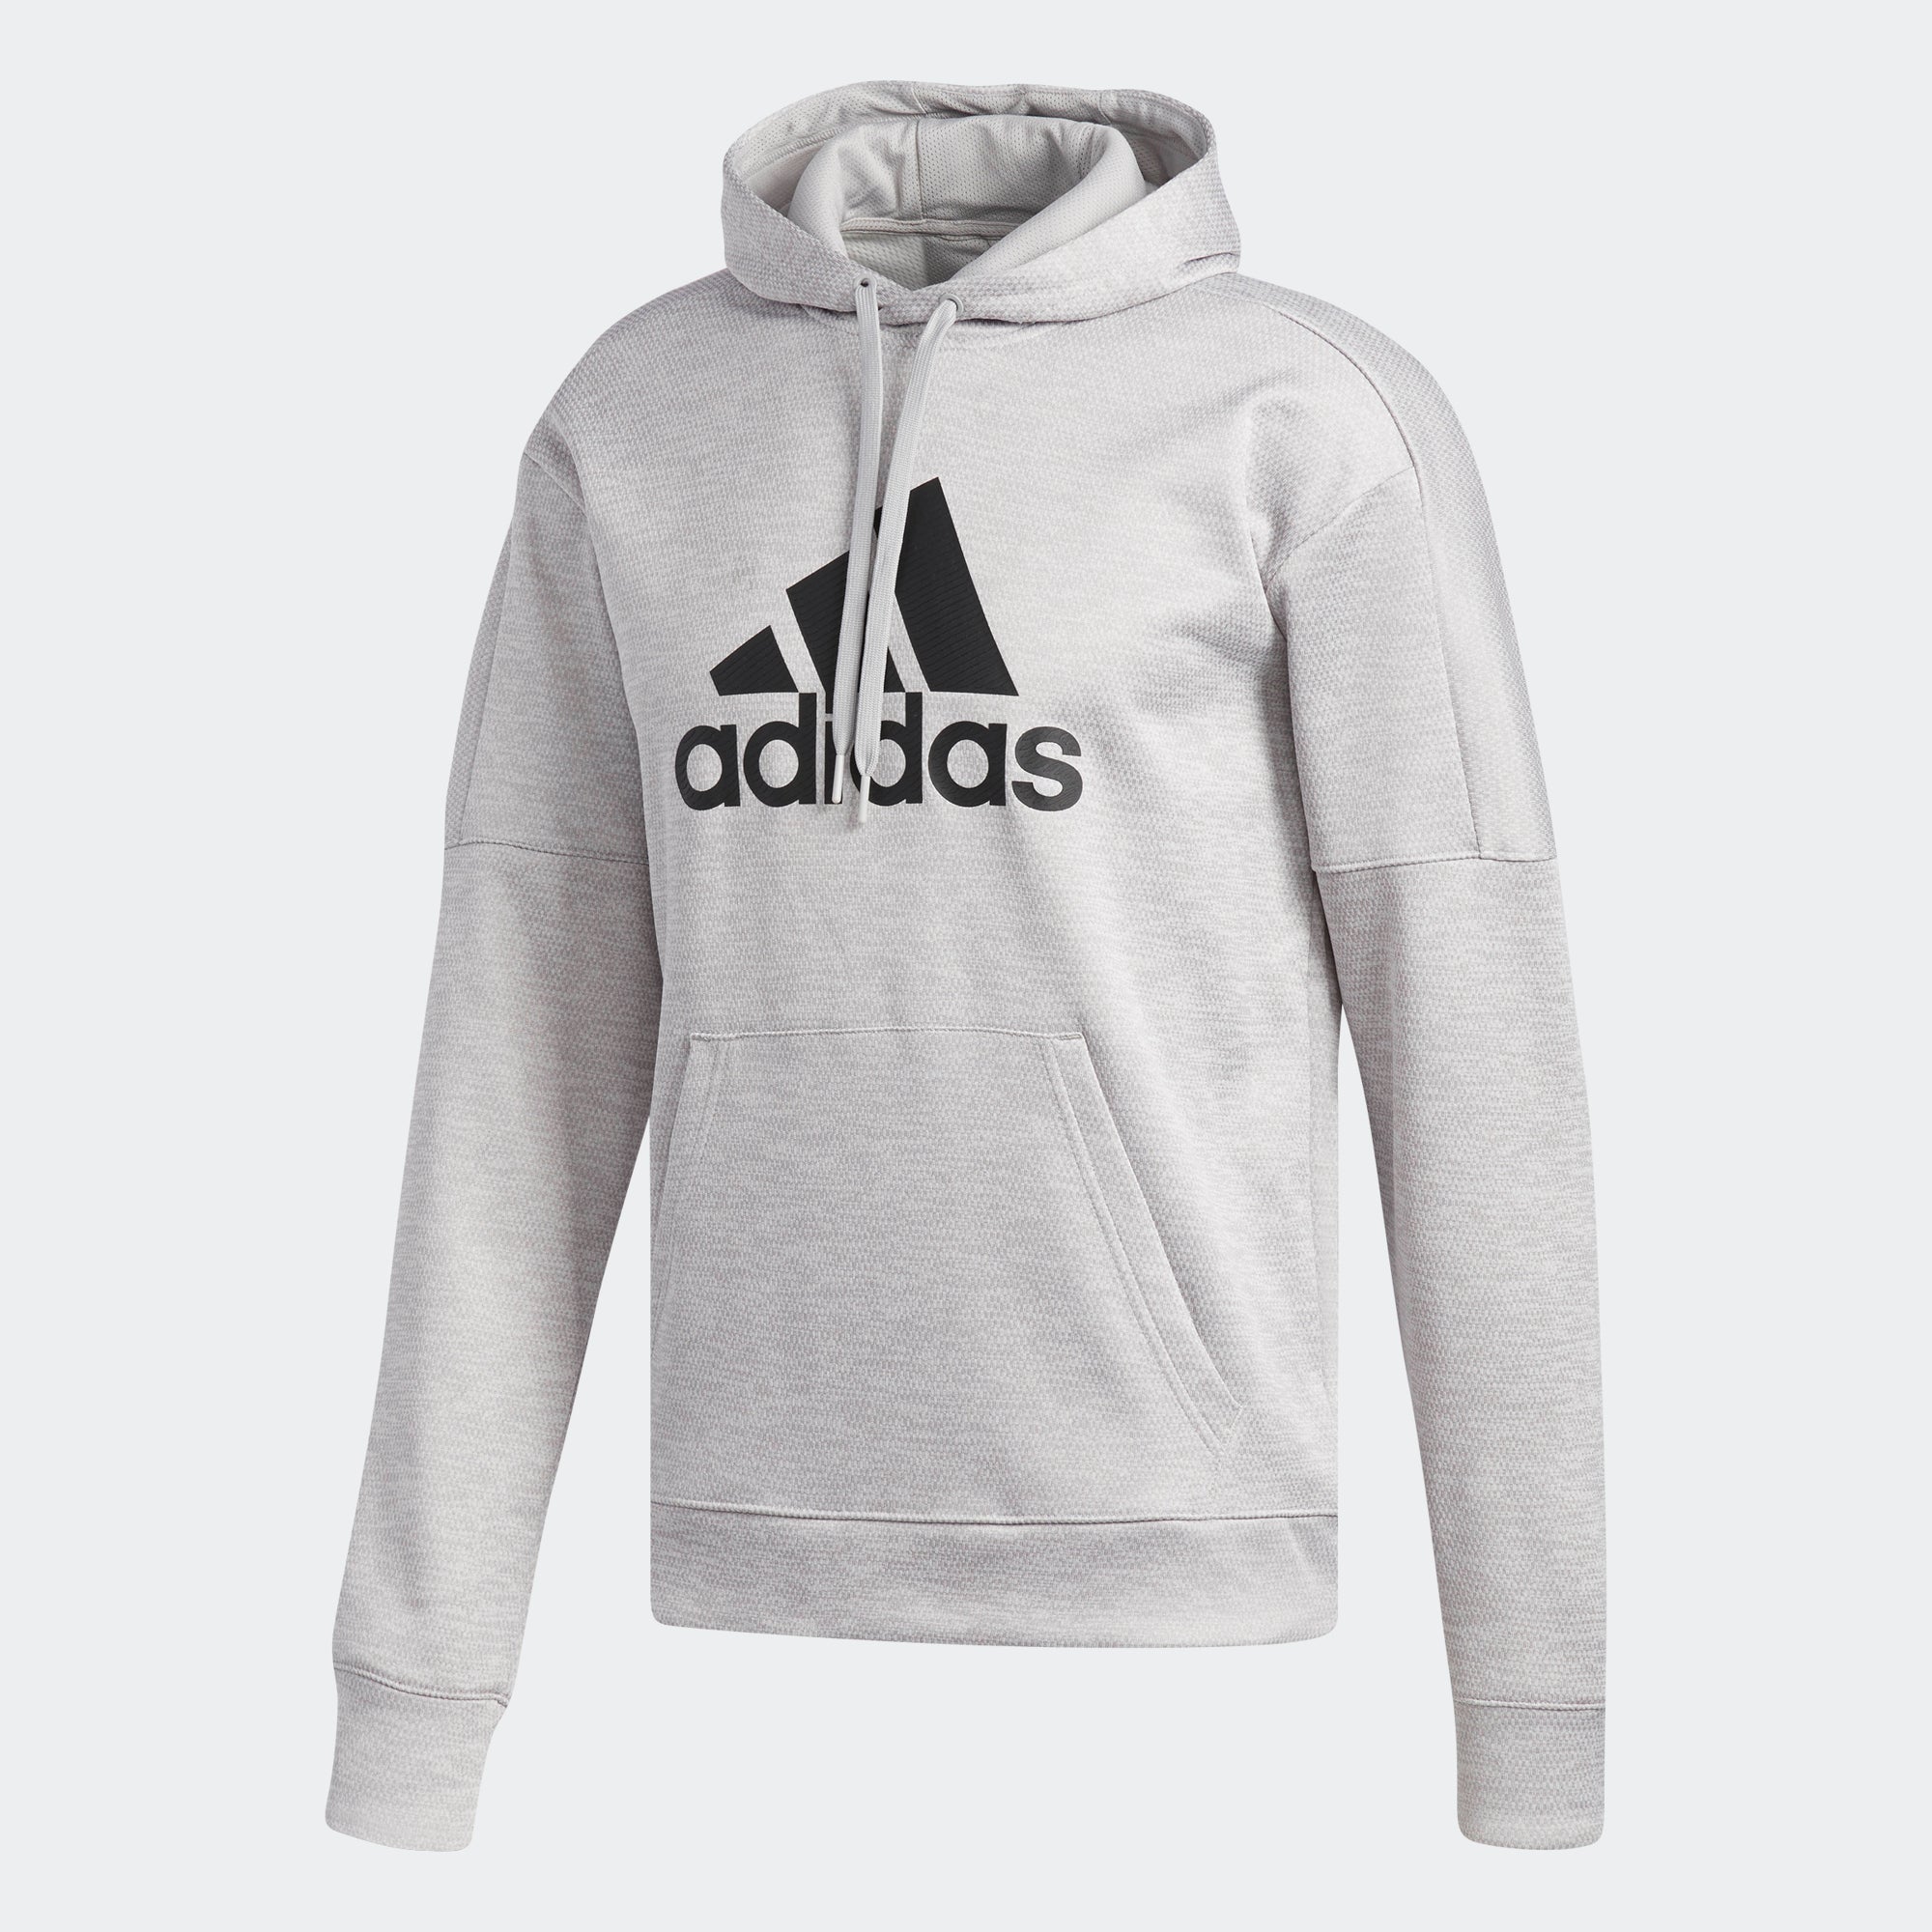 adidas team issue badge of sport hoodie men's